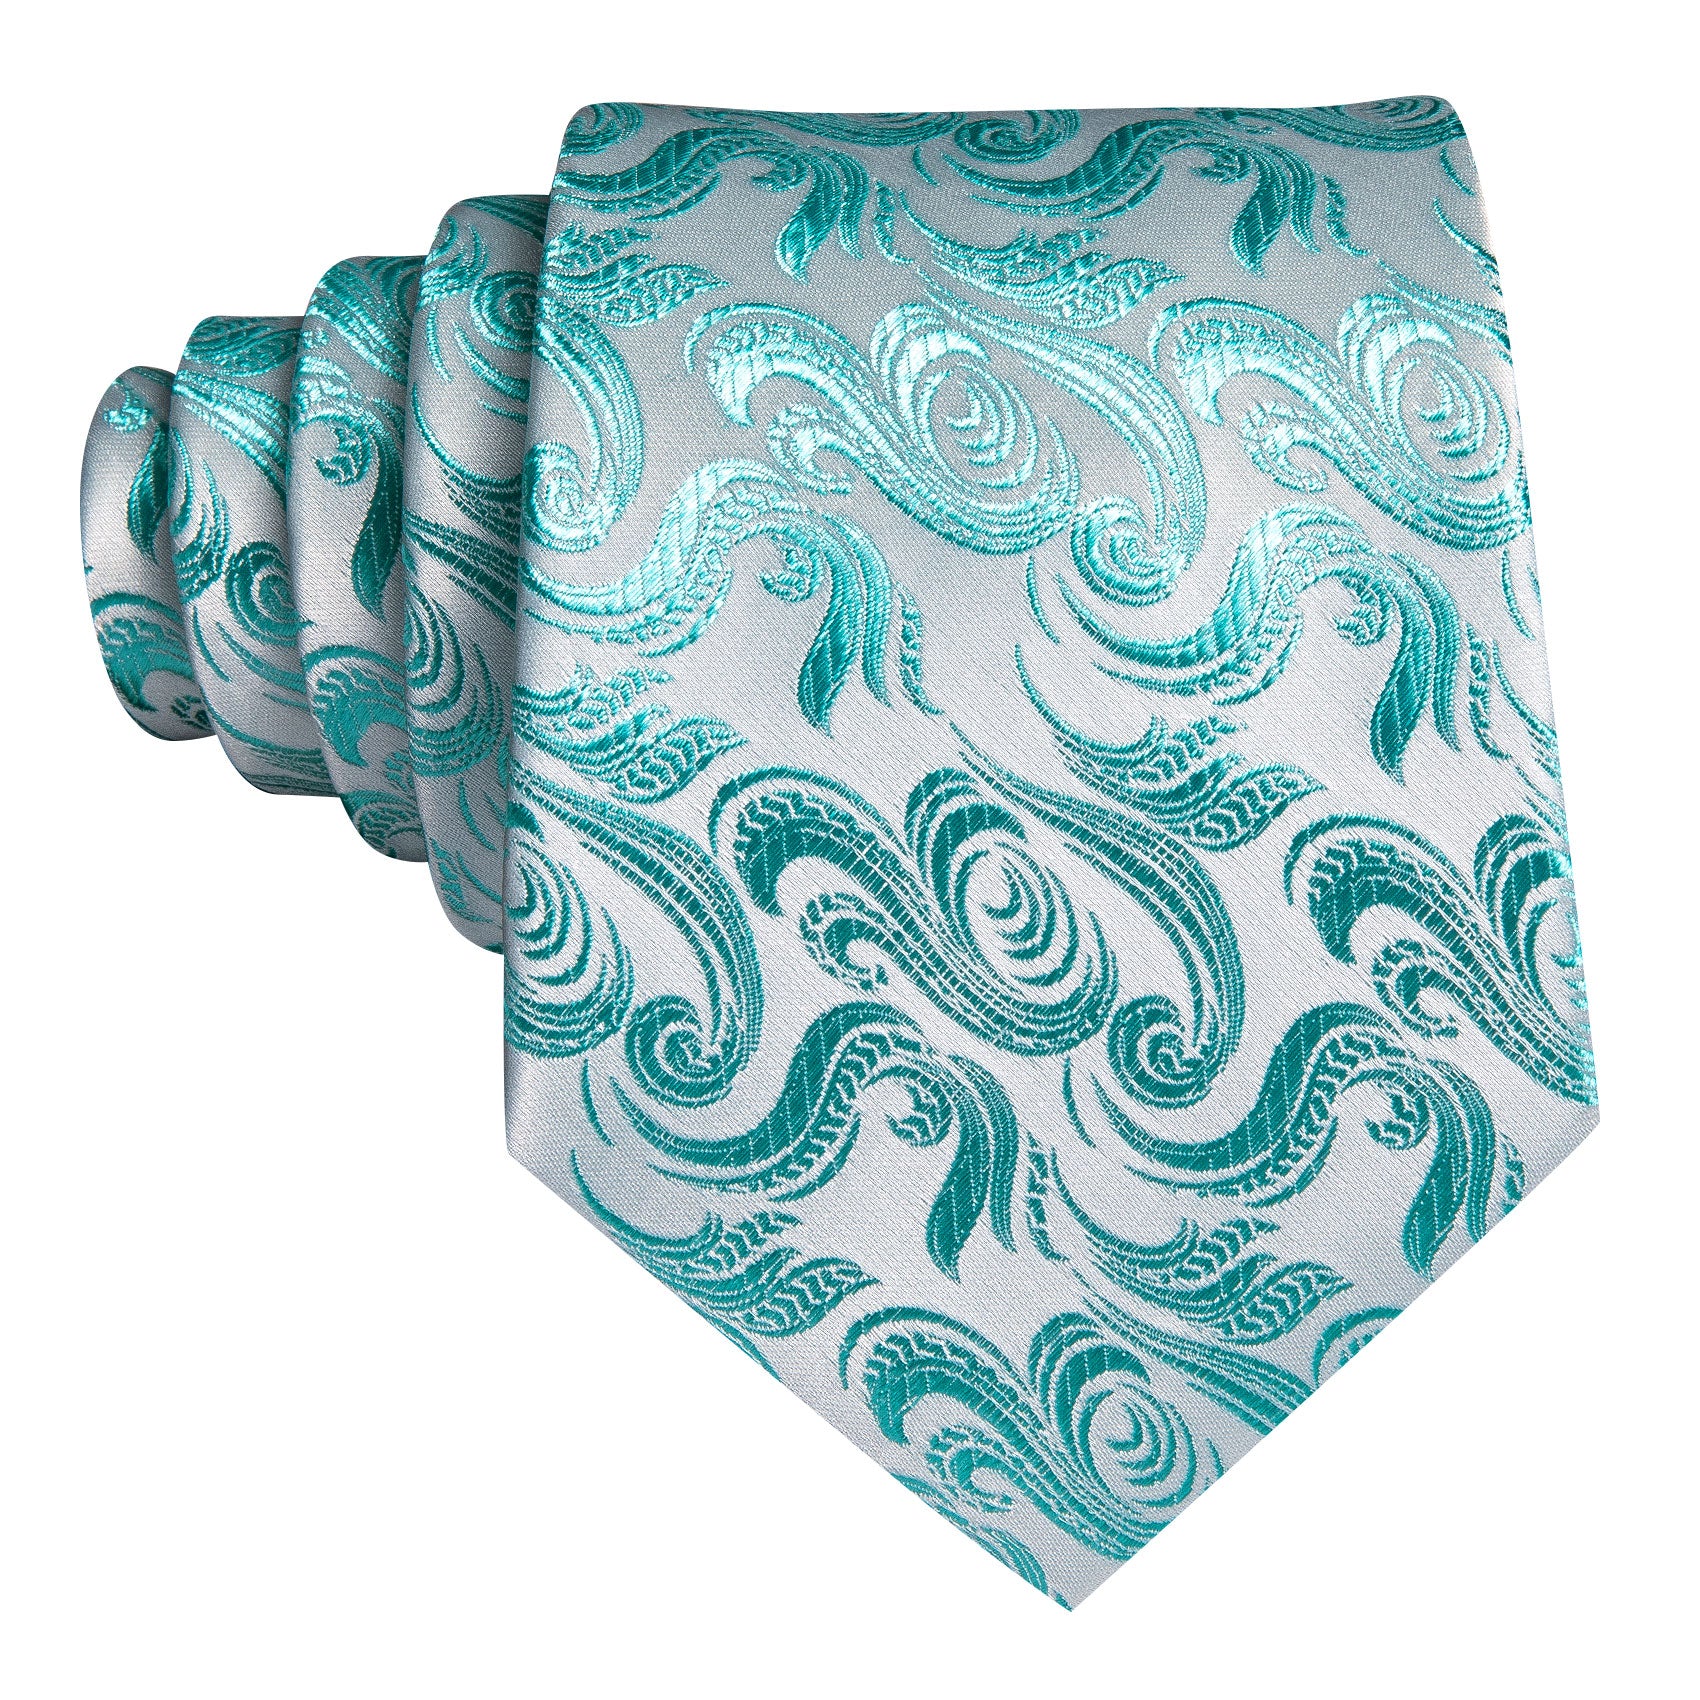 Blue White Floral Silk Tie Pocket Square Cufflinks Set